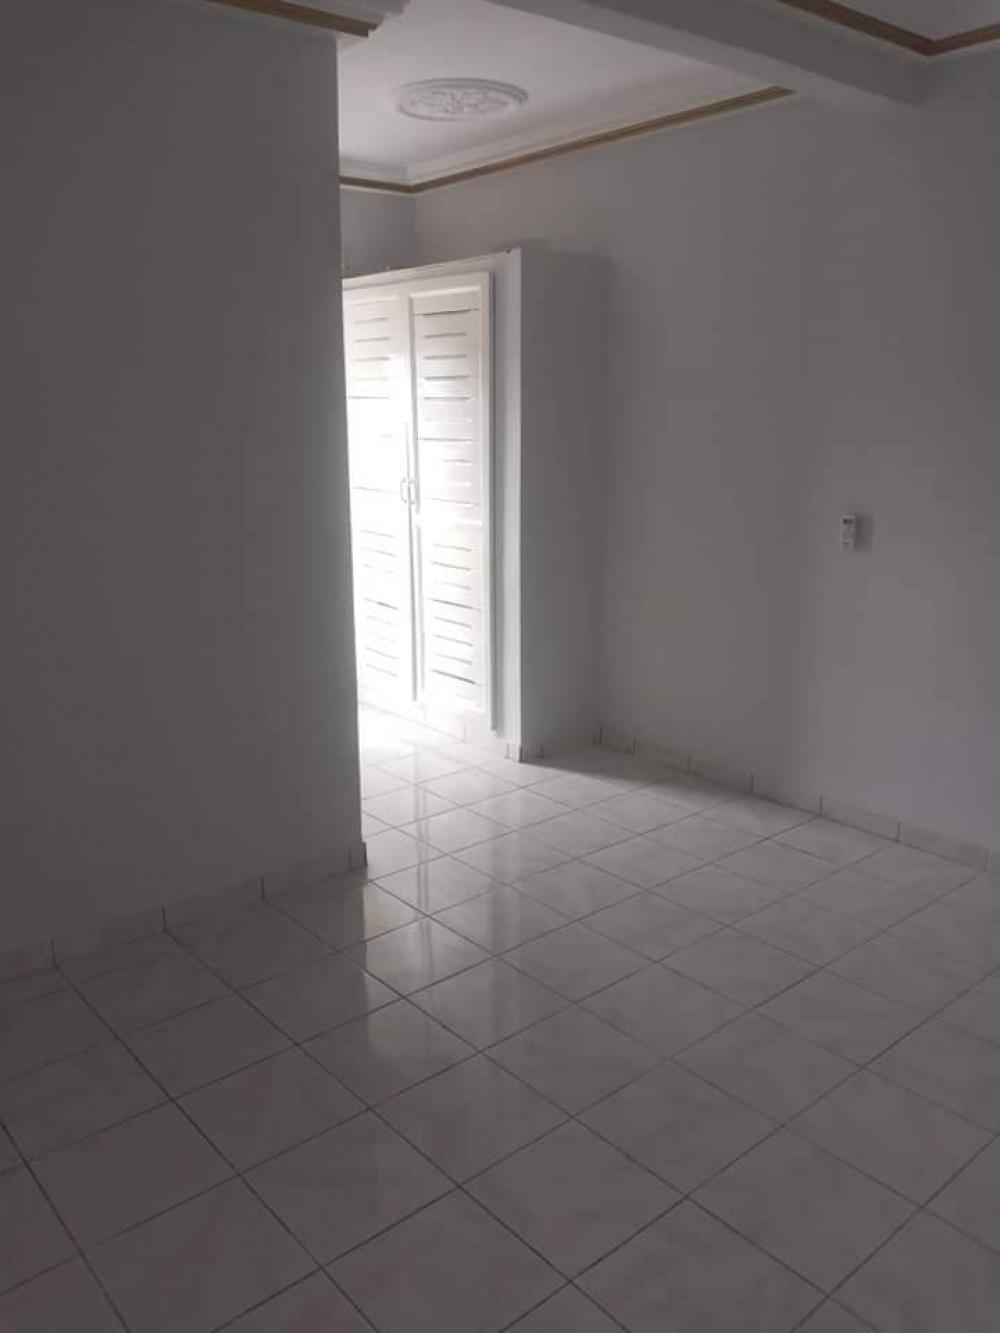 Appartement 2 chambres à louer à Libreville, La sablière. Prix: 280 000 FcfaPhoto Annonce Gabonhome 0